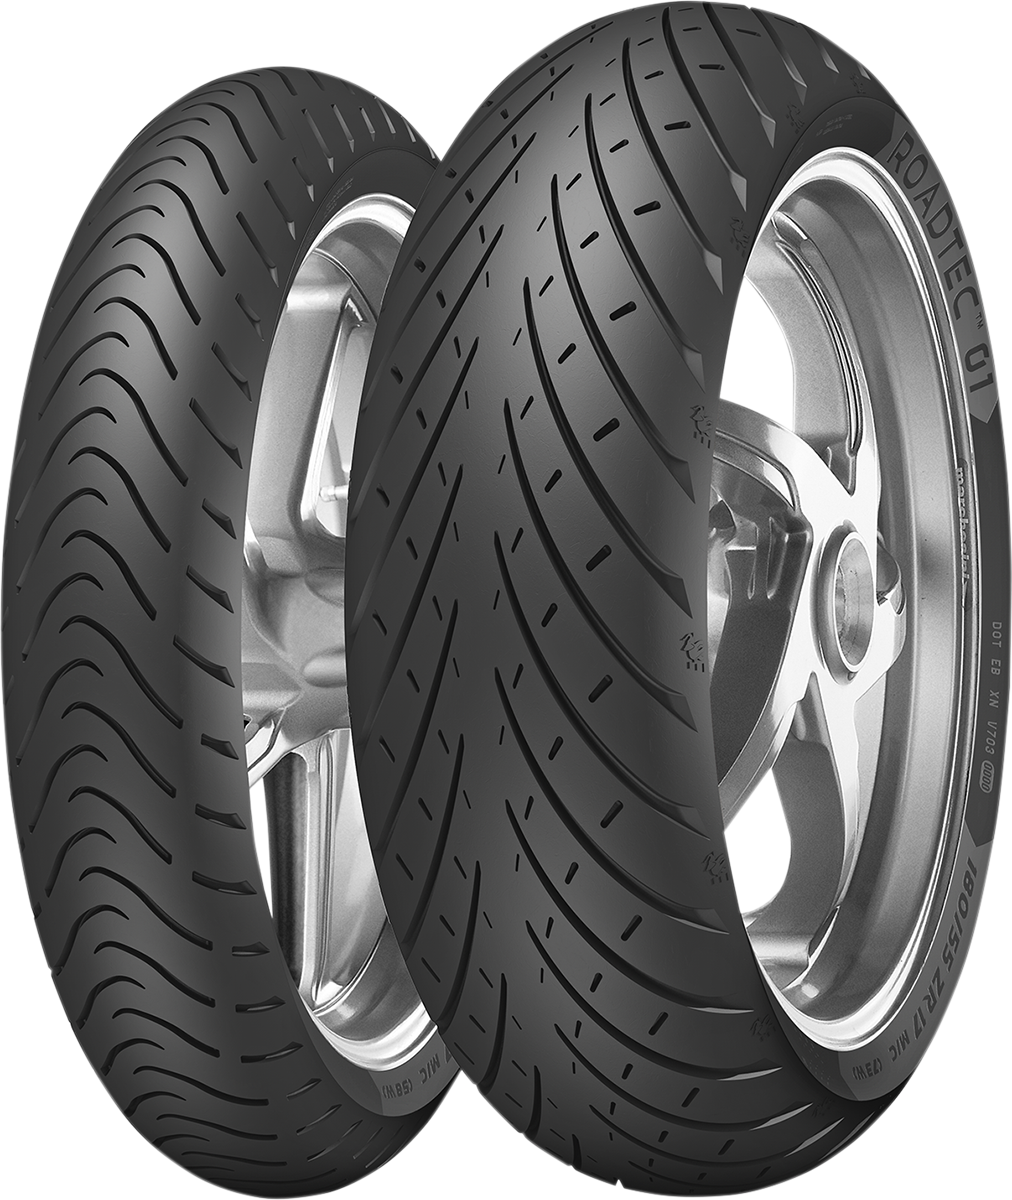 METZELER Tire - Roadtec* 01 - Rear - 190/55ZR17 - (75W) 2681500